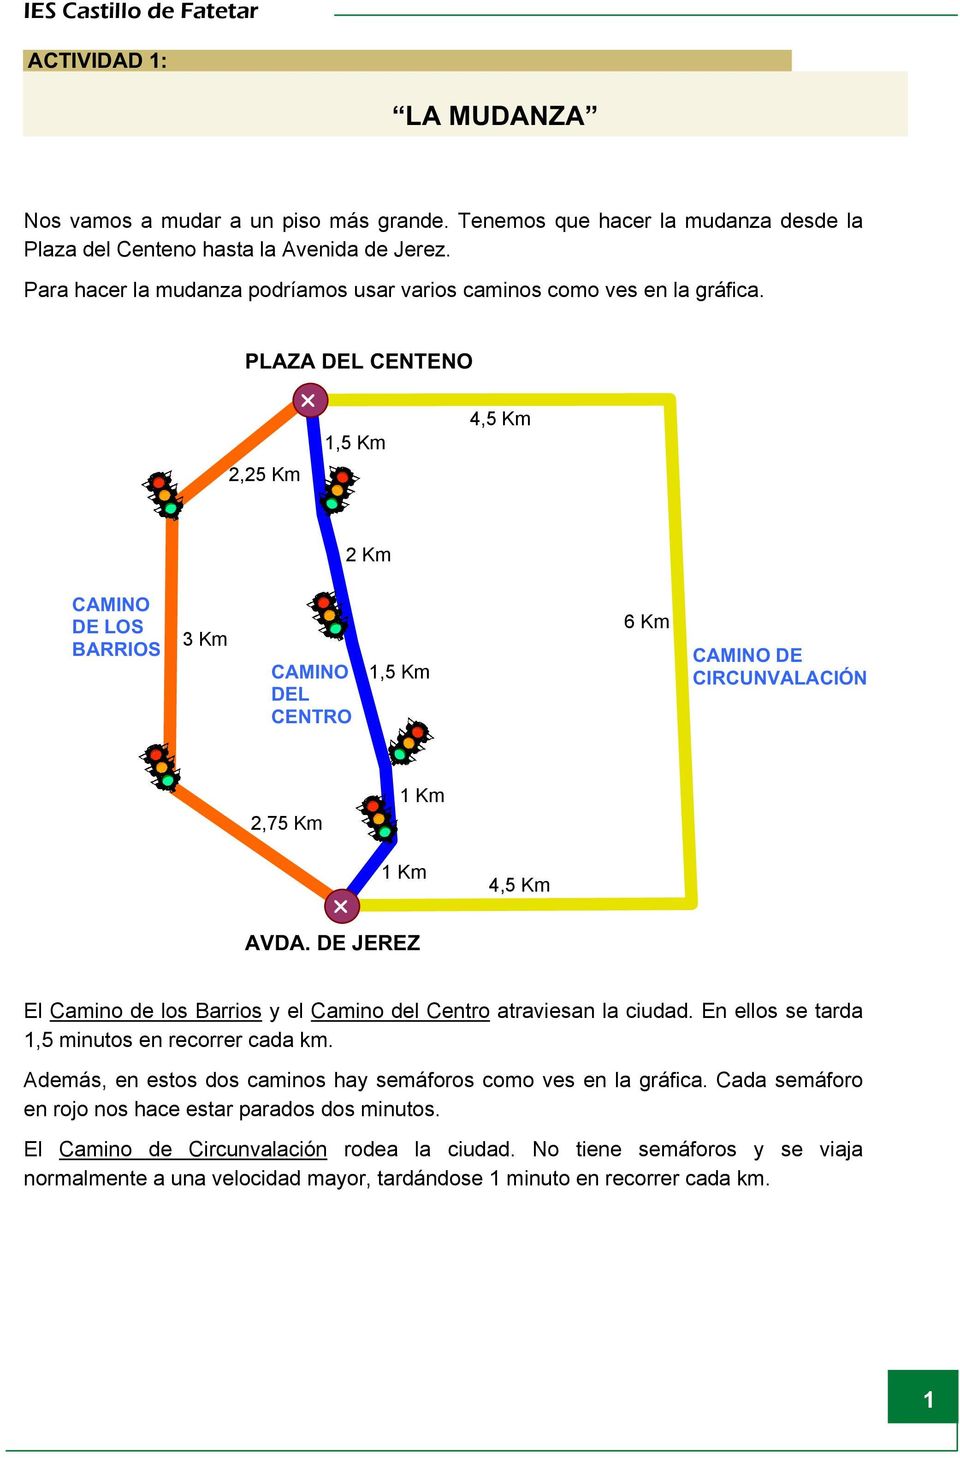 PLAZA DEL CENTENO 2,25 Km 1,5 Km 4,5 Km 2 Km CAMINO DE LOS BARRIOS 3 Km CAMINO DEL CENTRO 1,5 Km 6 Km CAMINO DE CIRCUNVALACIÓN 2,75 Km 1 Km 1 Km AVDA.